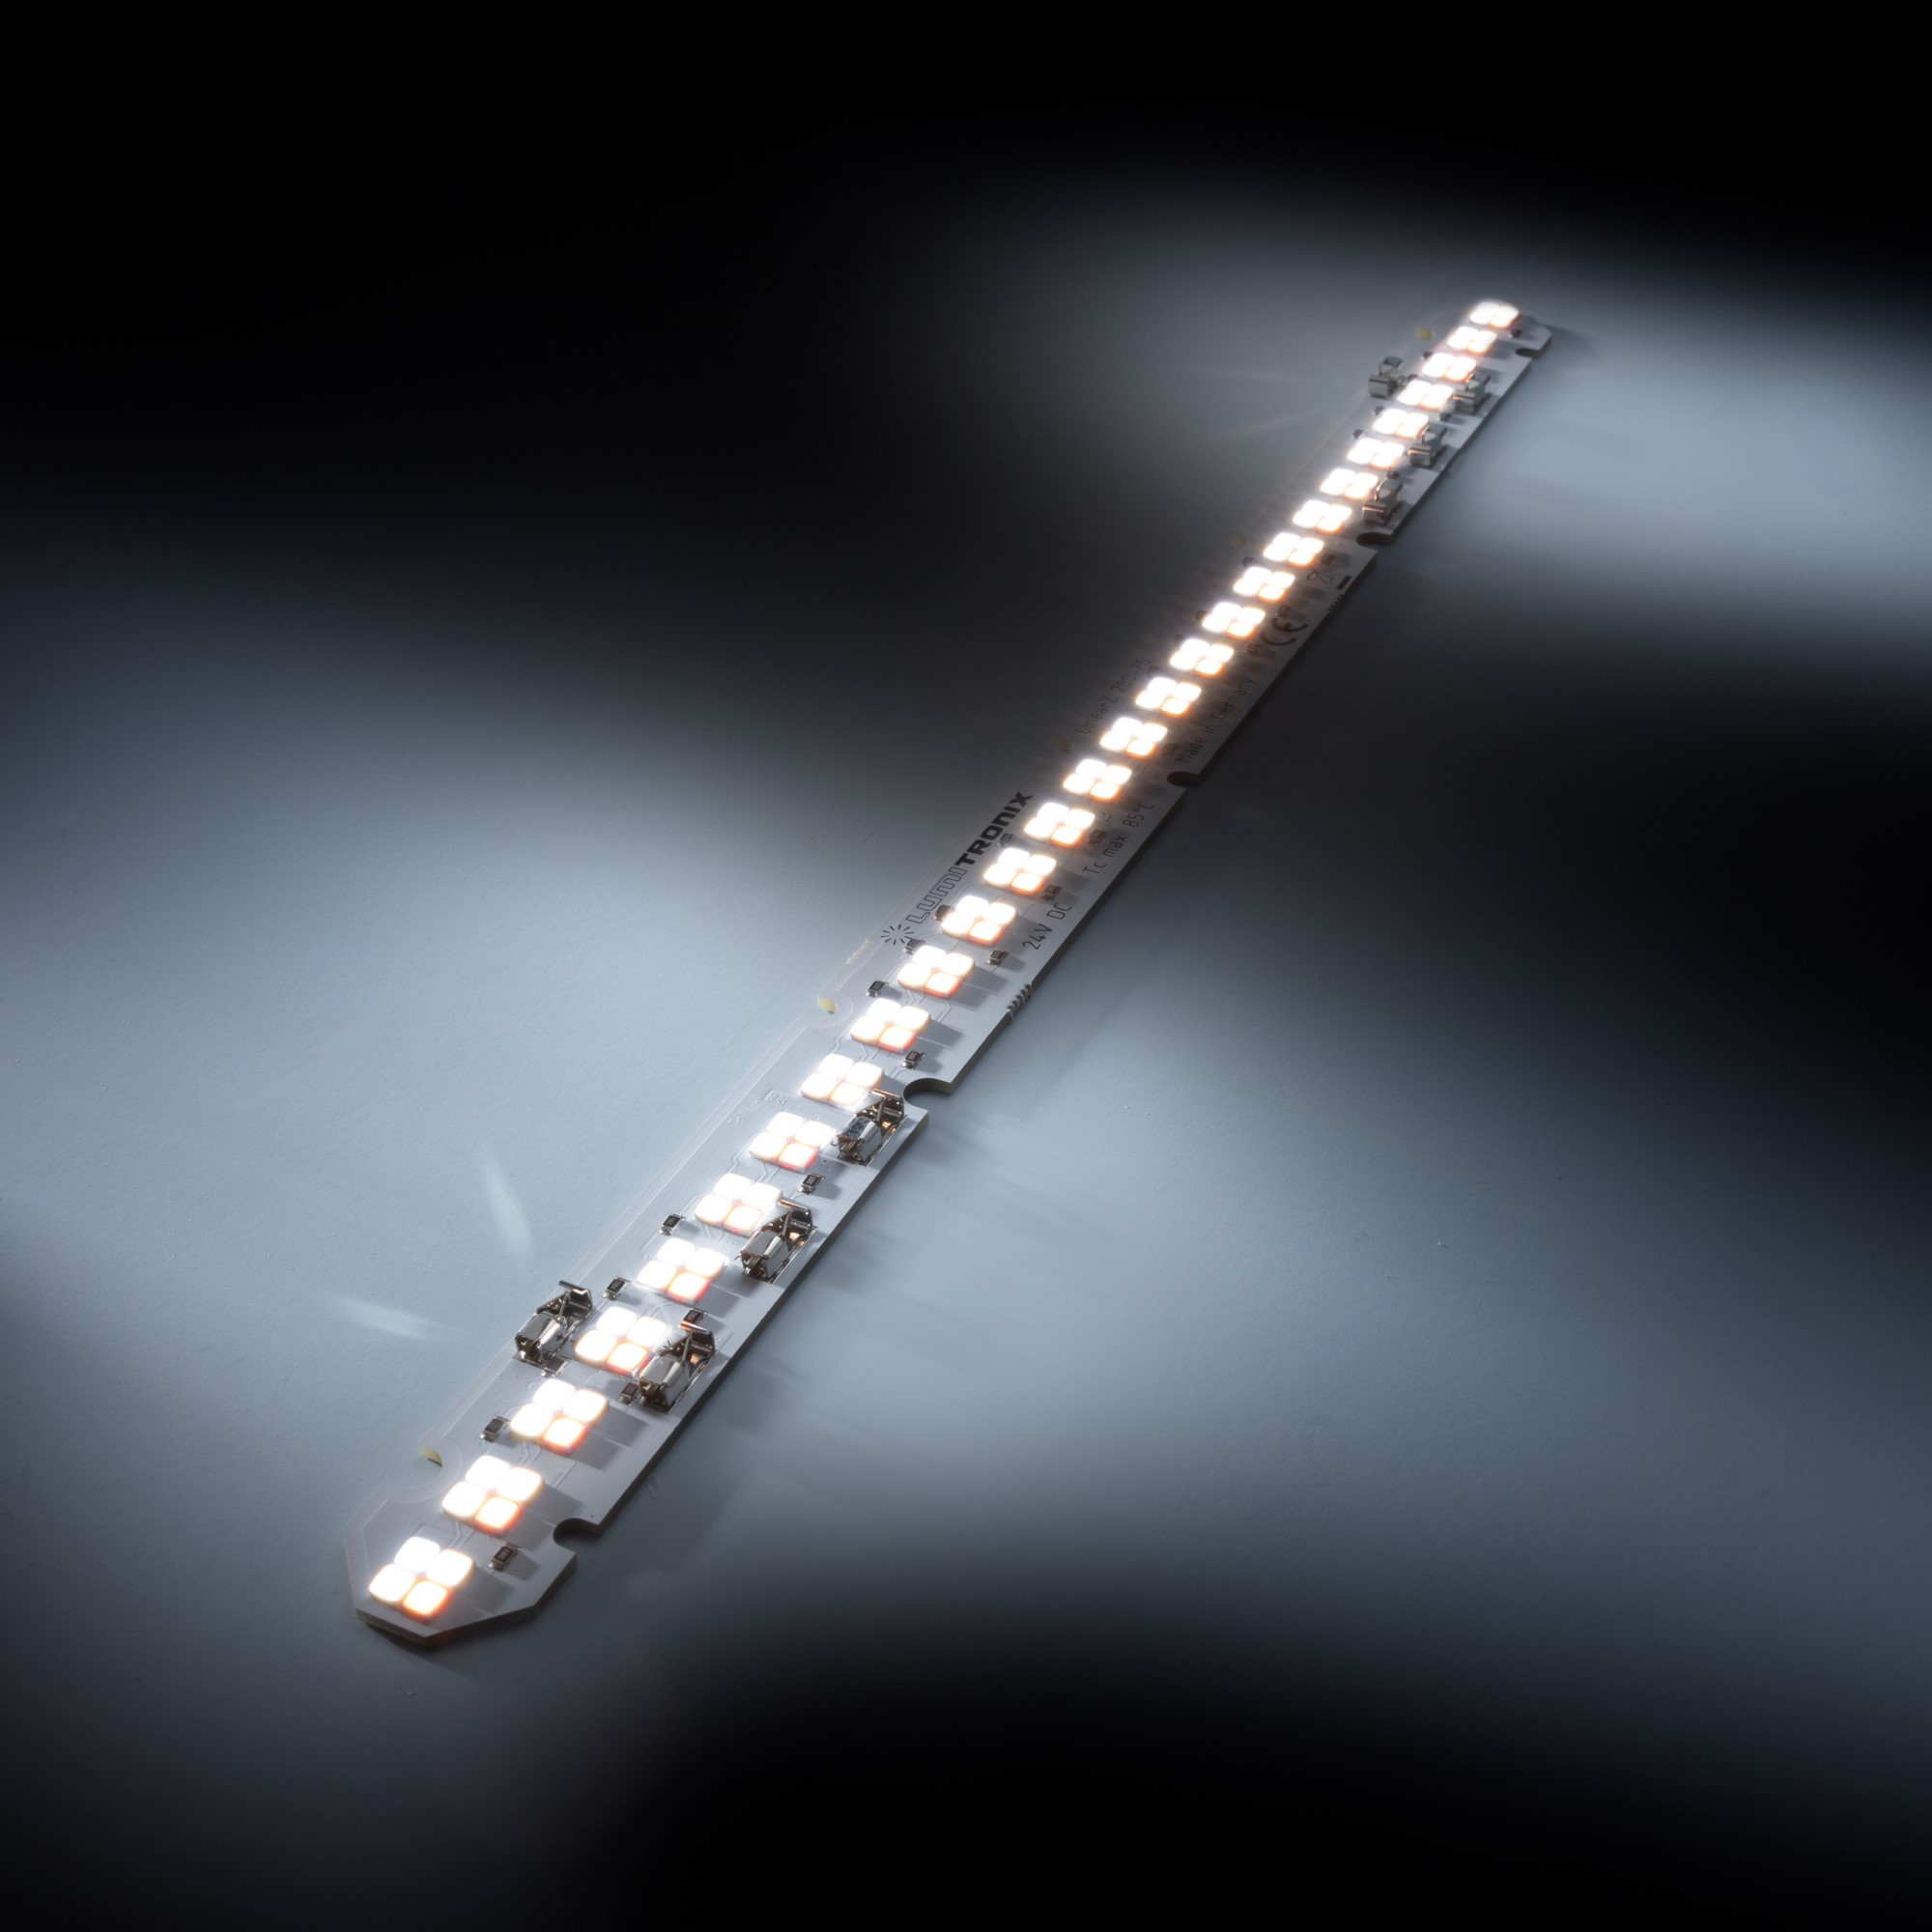 LumiBarTW-112-4090+ Nichia H6 Series TW LED Strip Zhaga CRI92 TriGain white 2000+4000+6500K 1140lm 24V 112 LEDs 28cm module